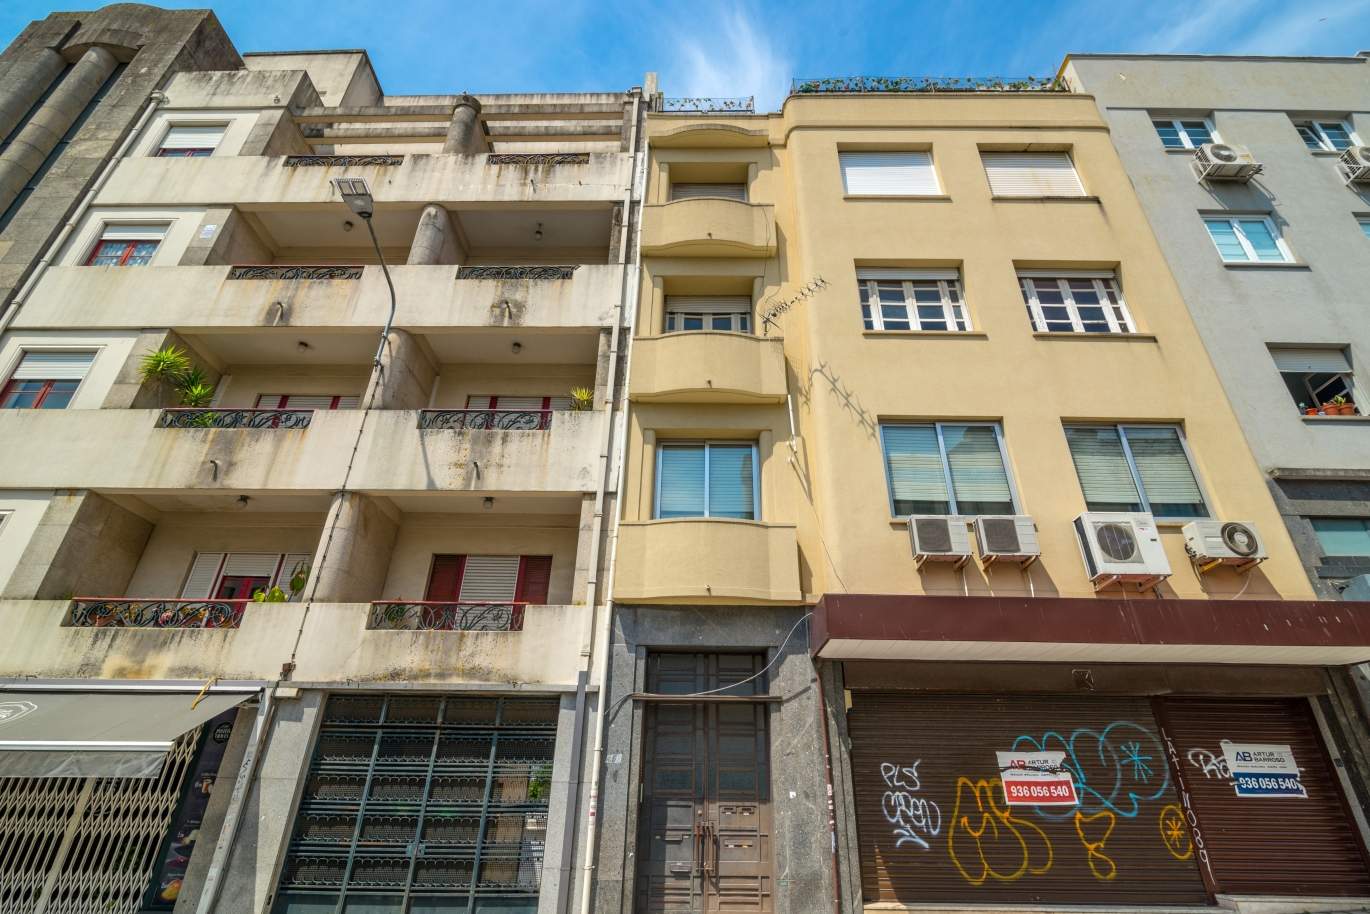 Tienda de dos pisos para remodelar en el centro de Oporto_140049